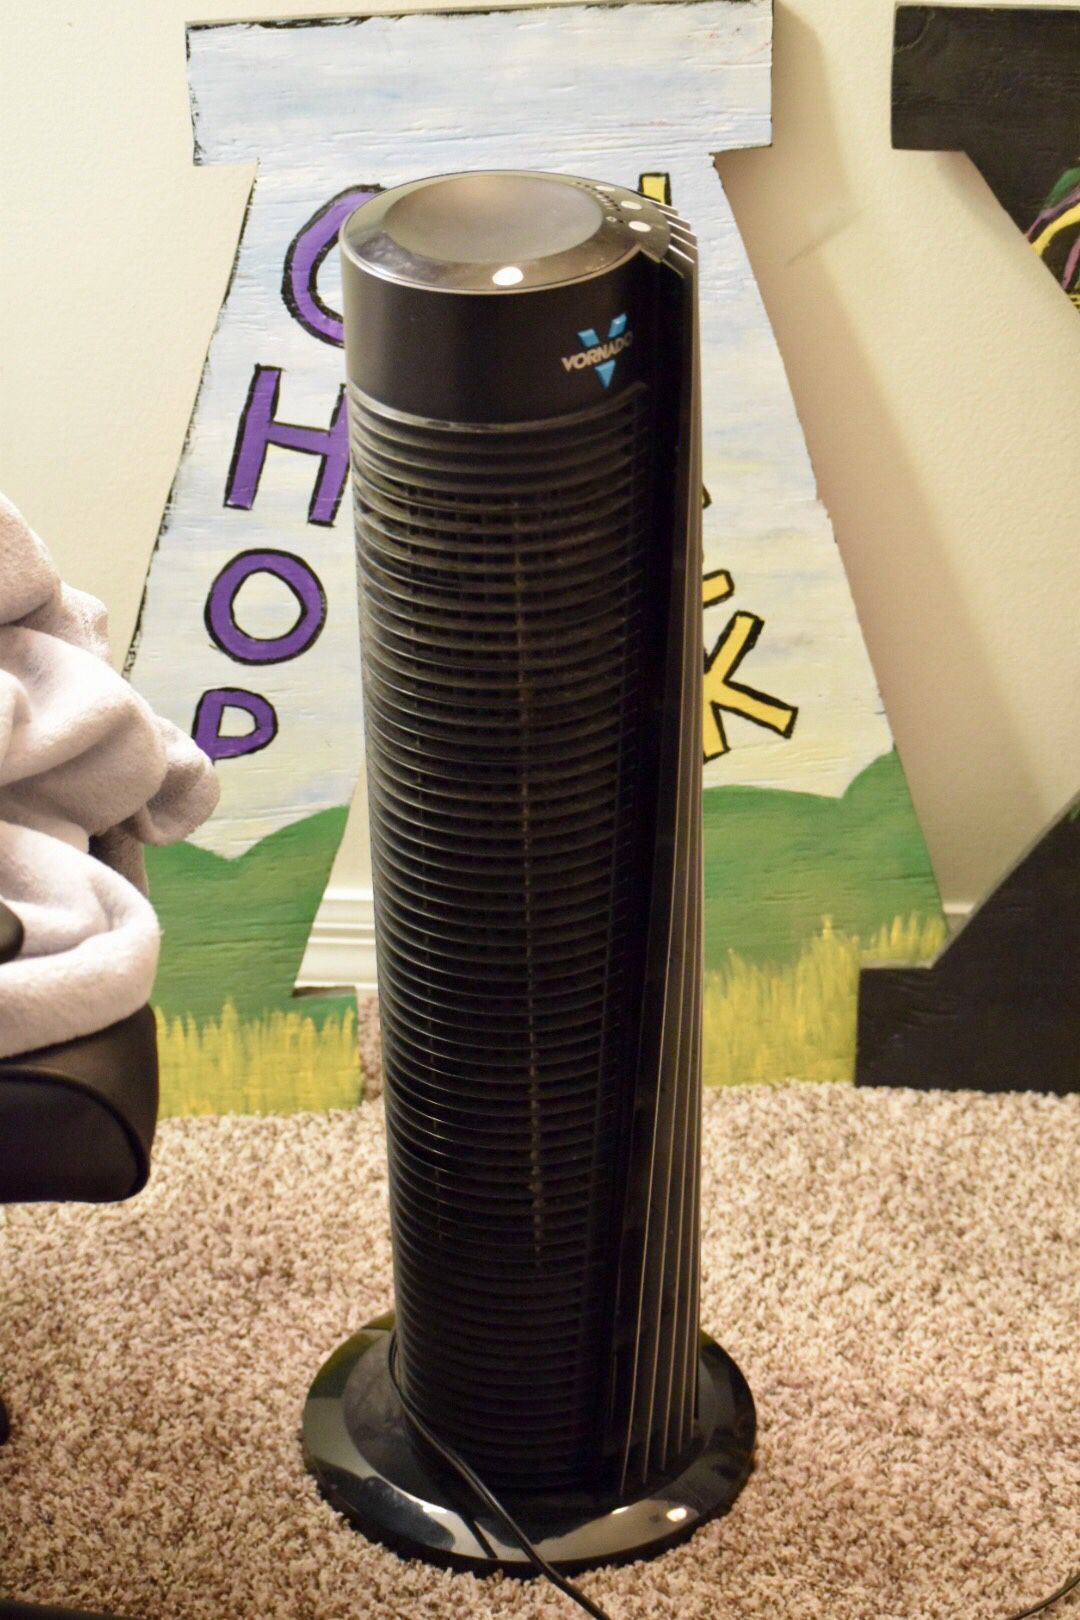 41-inch tower fan